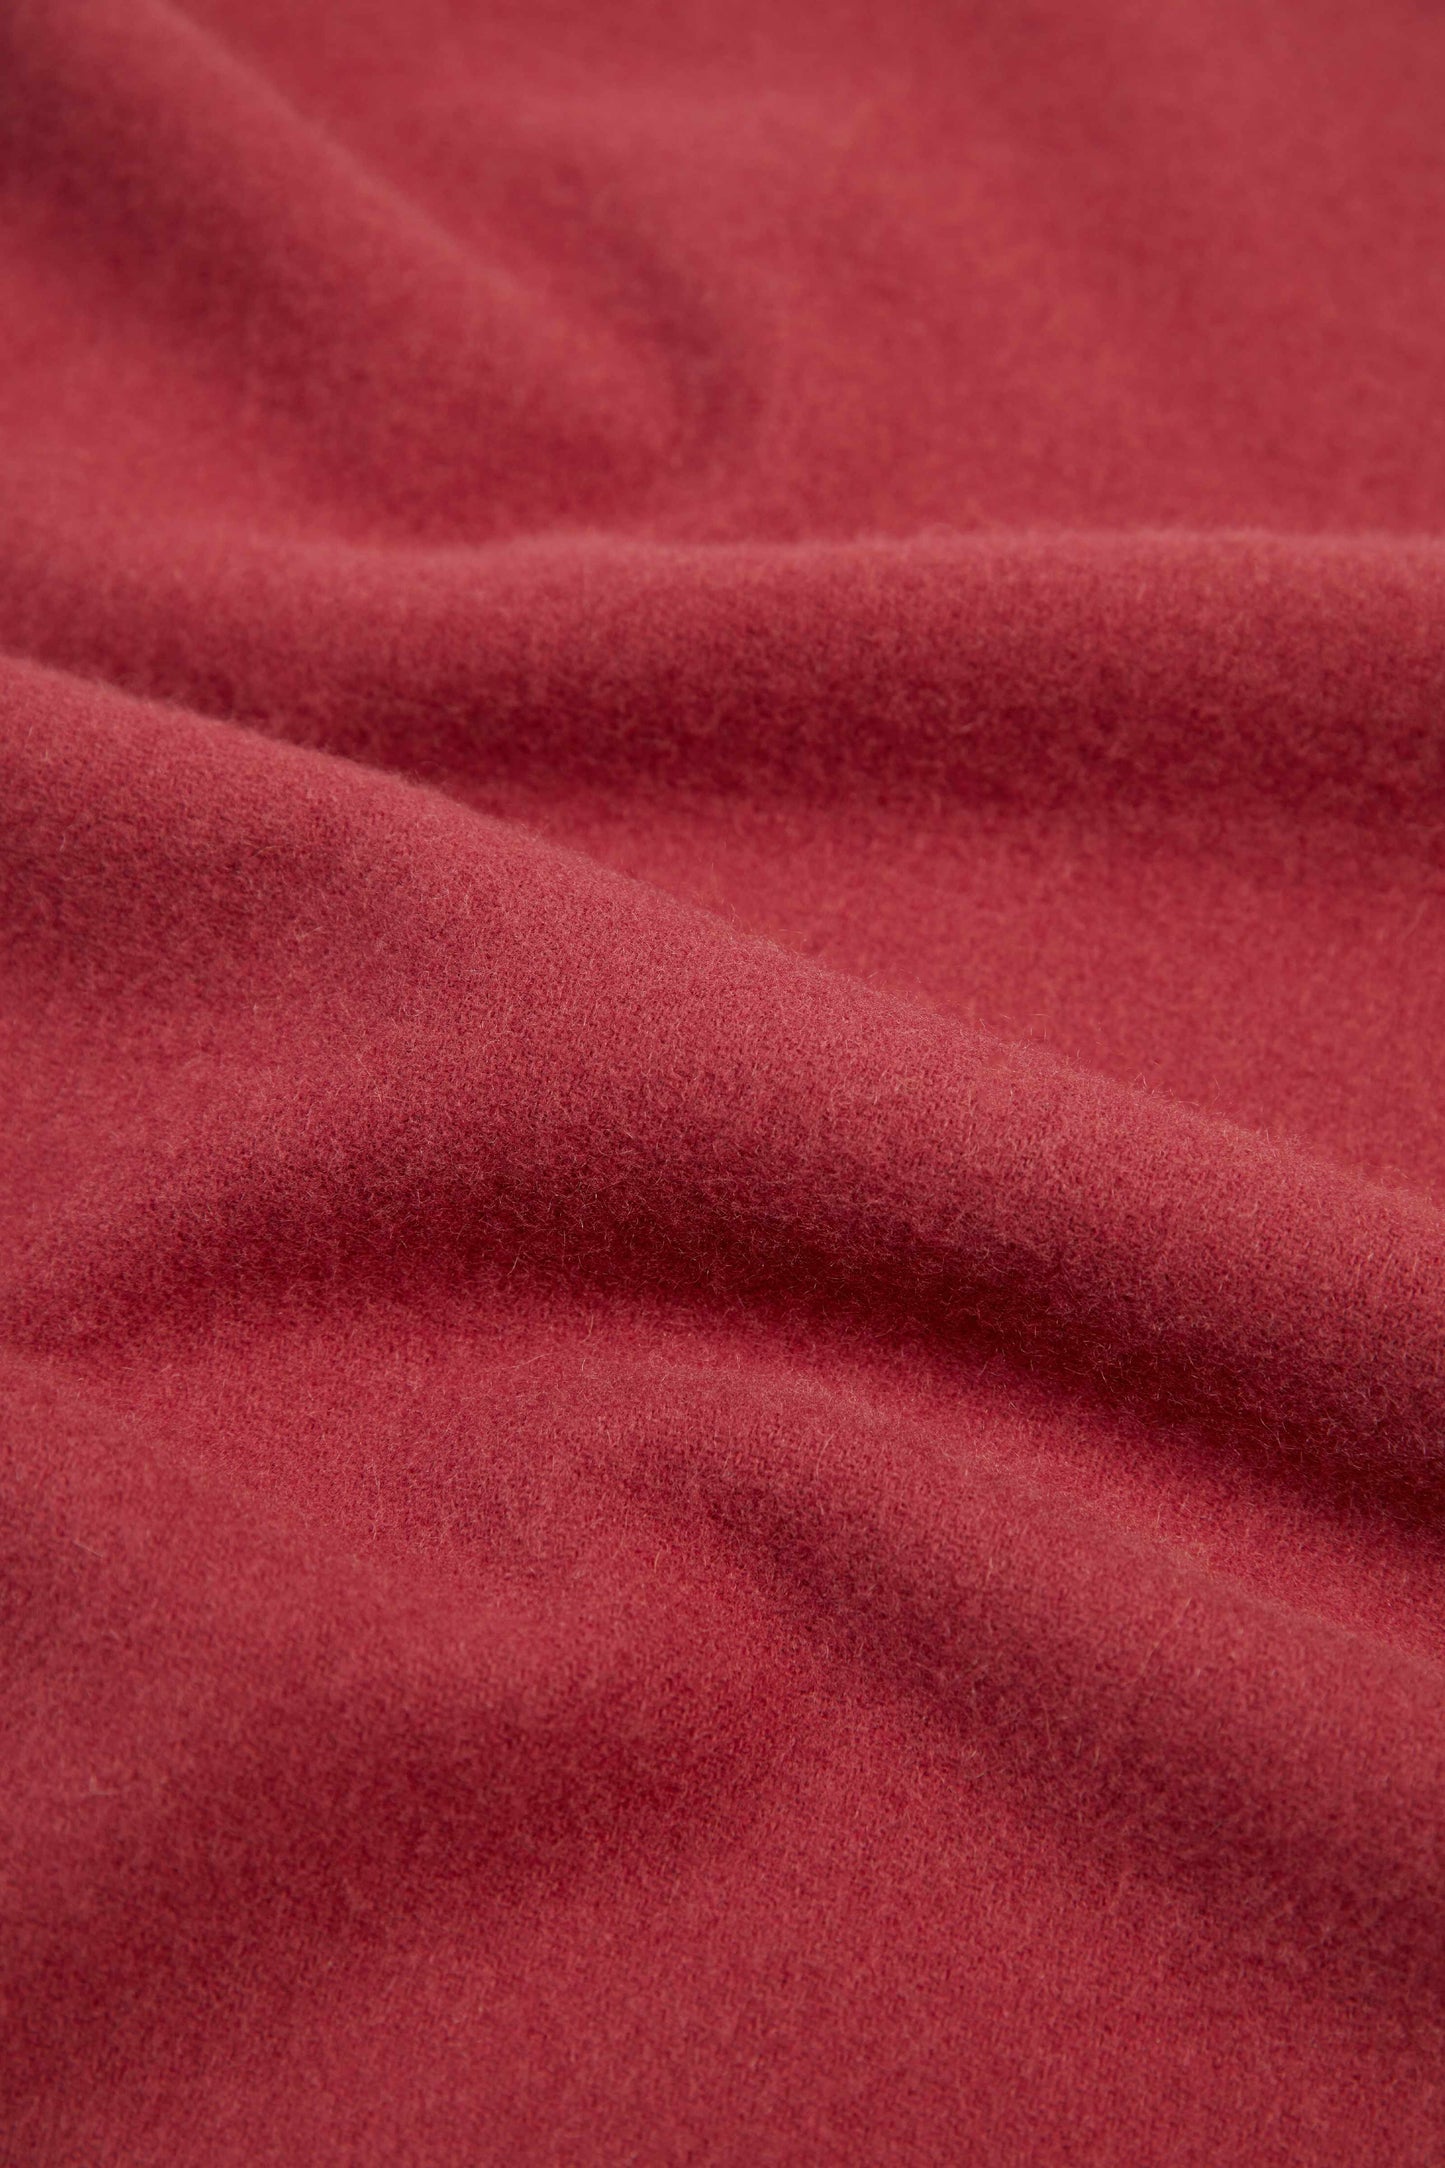 Écharpe avec franges en cachemire pour unisex Rouge - Gobi Cashmere 